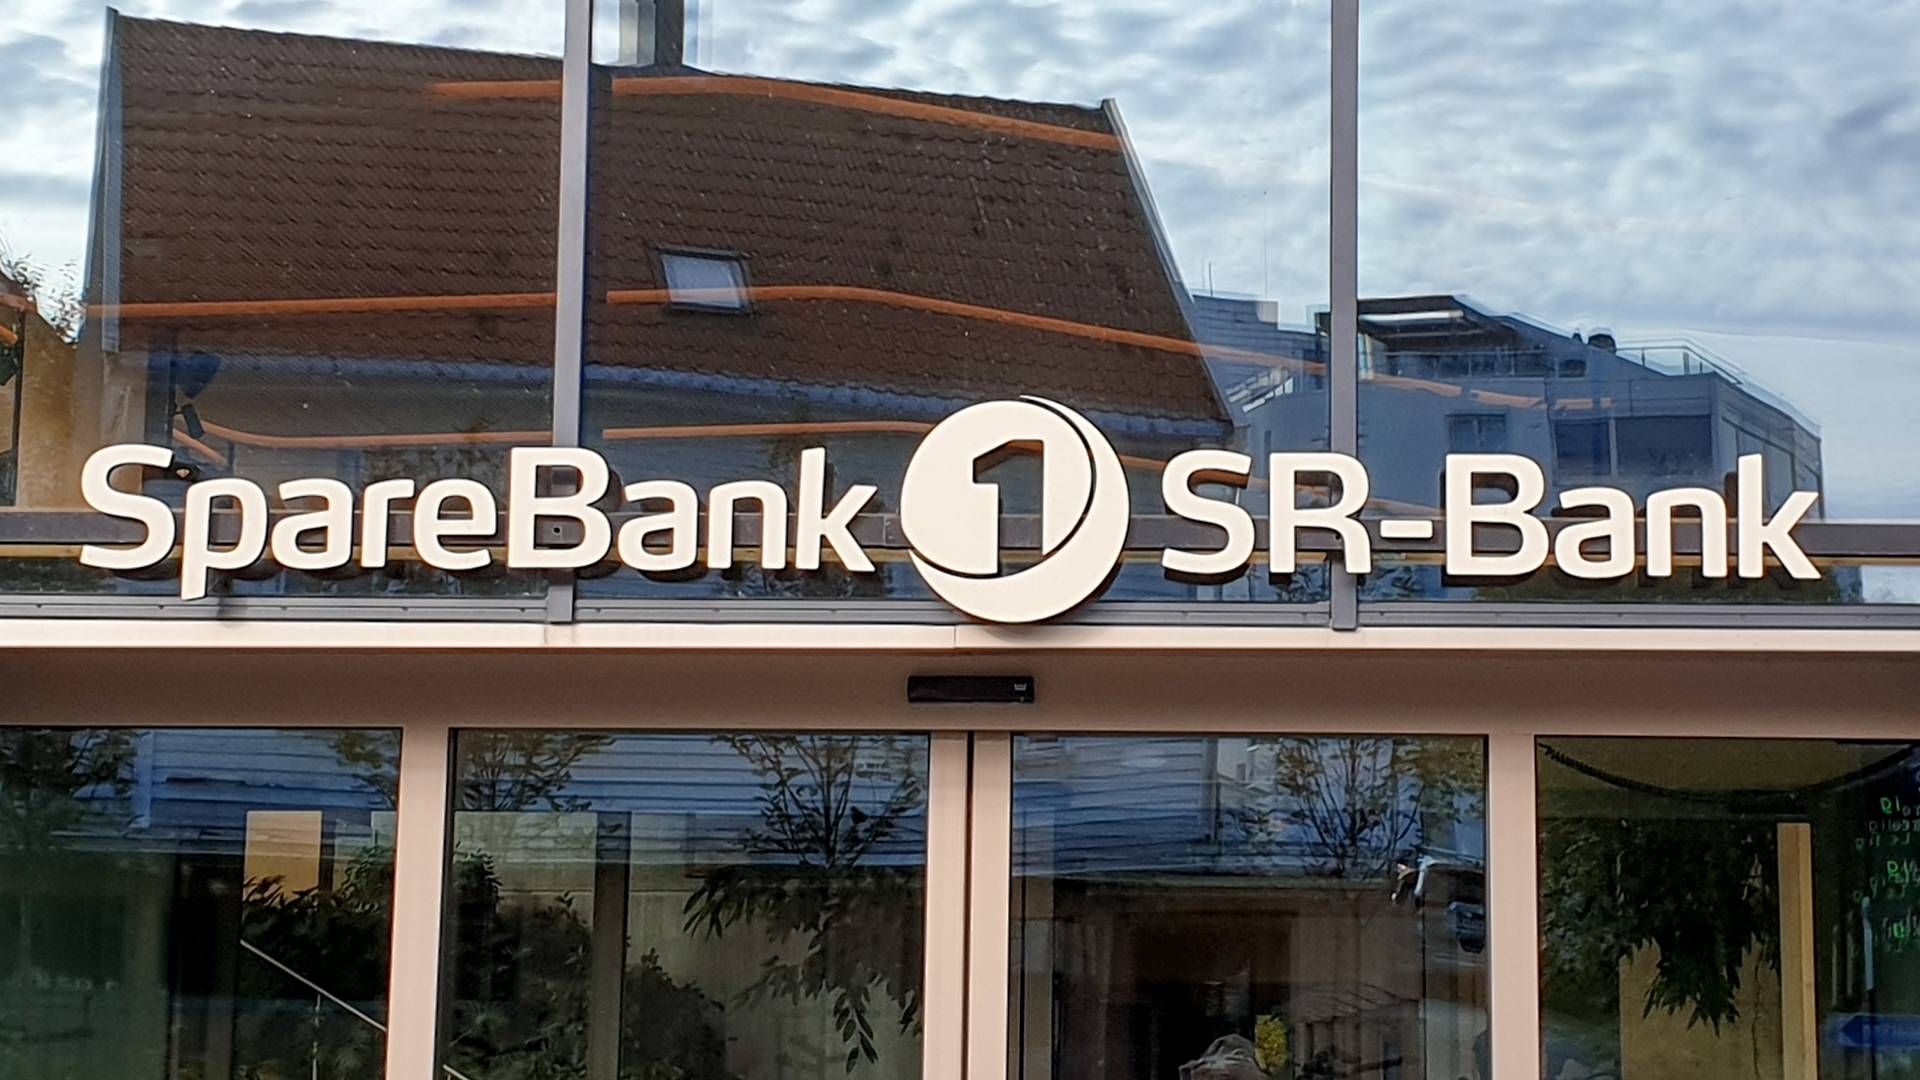 Banksjefen i Sparebank 1 SR-bank Ryfylke er glad for å se at kundene bruker pengene sine smartere. Sel kutter han ned på strøm og drivstoff. | Foto: Sebastian Holsen